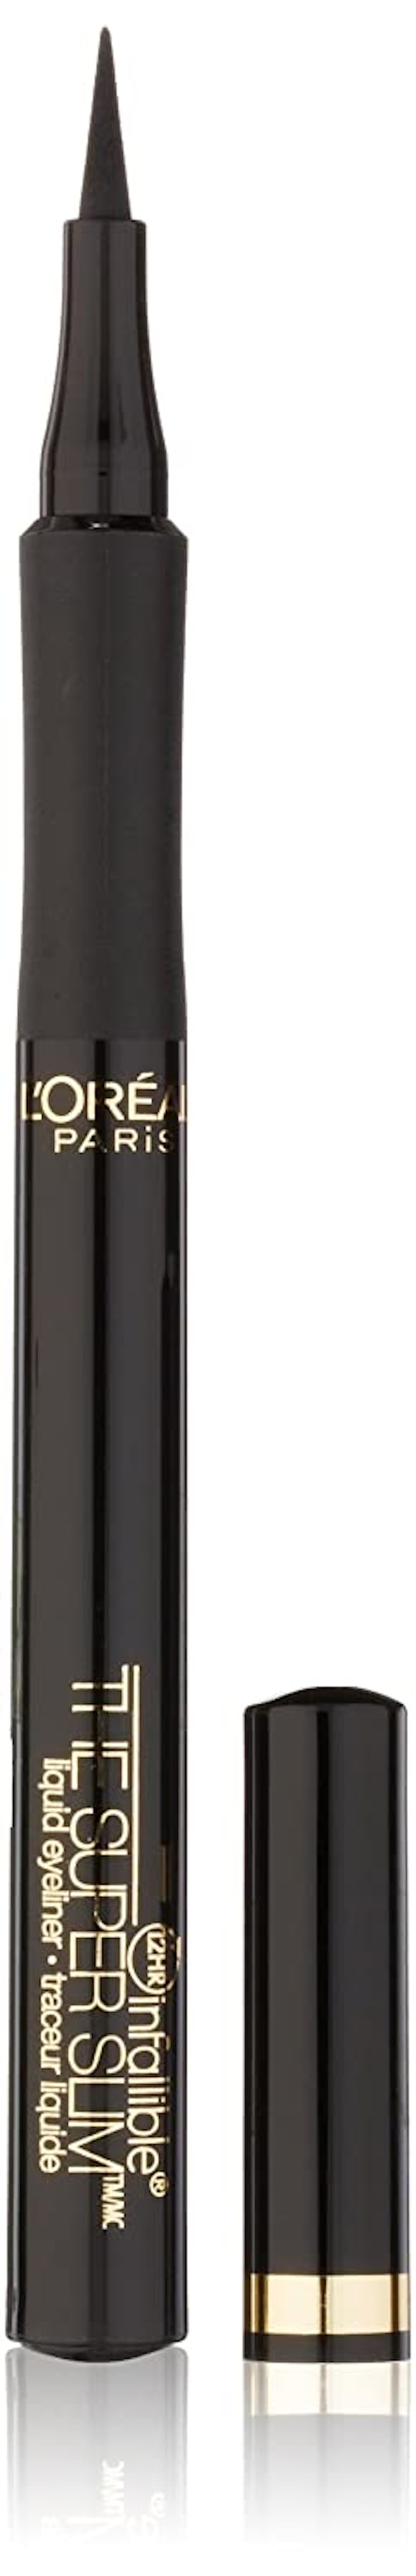 L’Oréal Paris Infallible The Super Slim Liquid Eyeliner